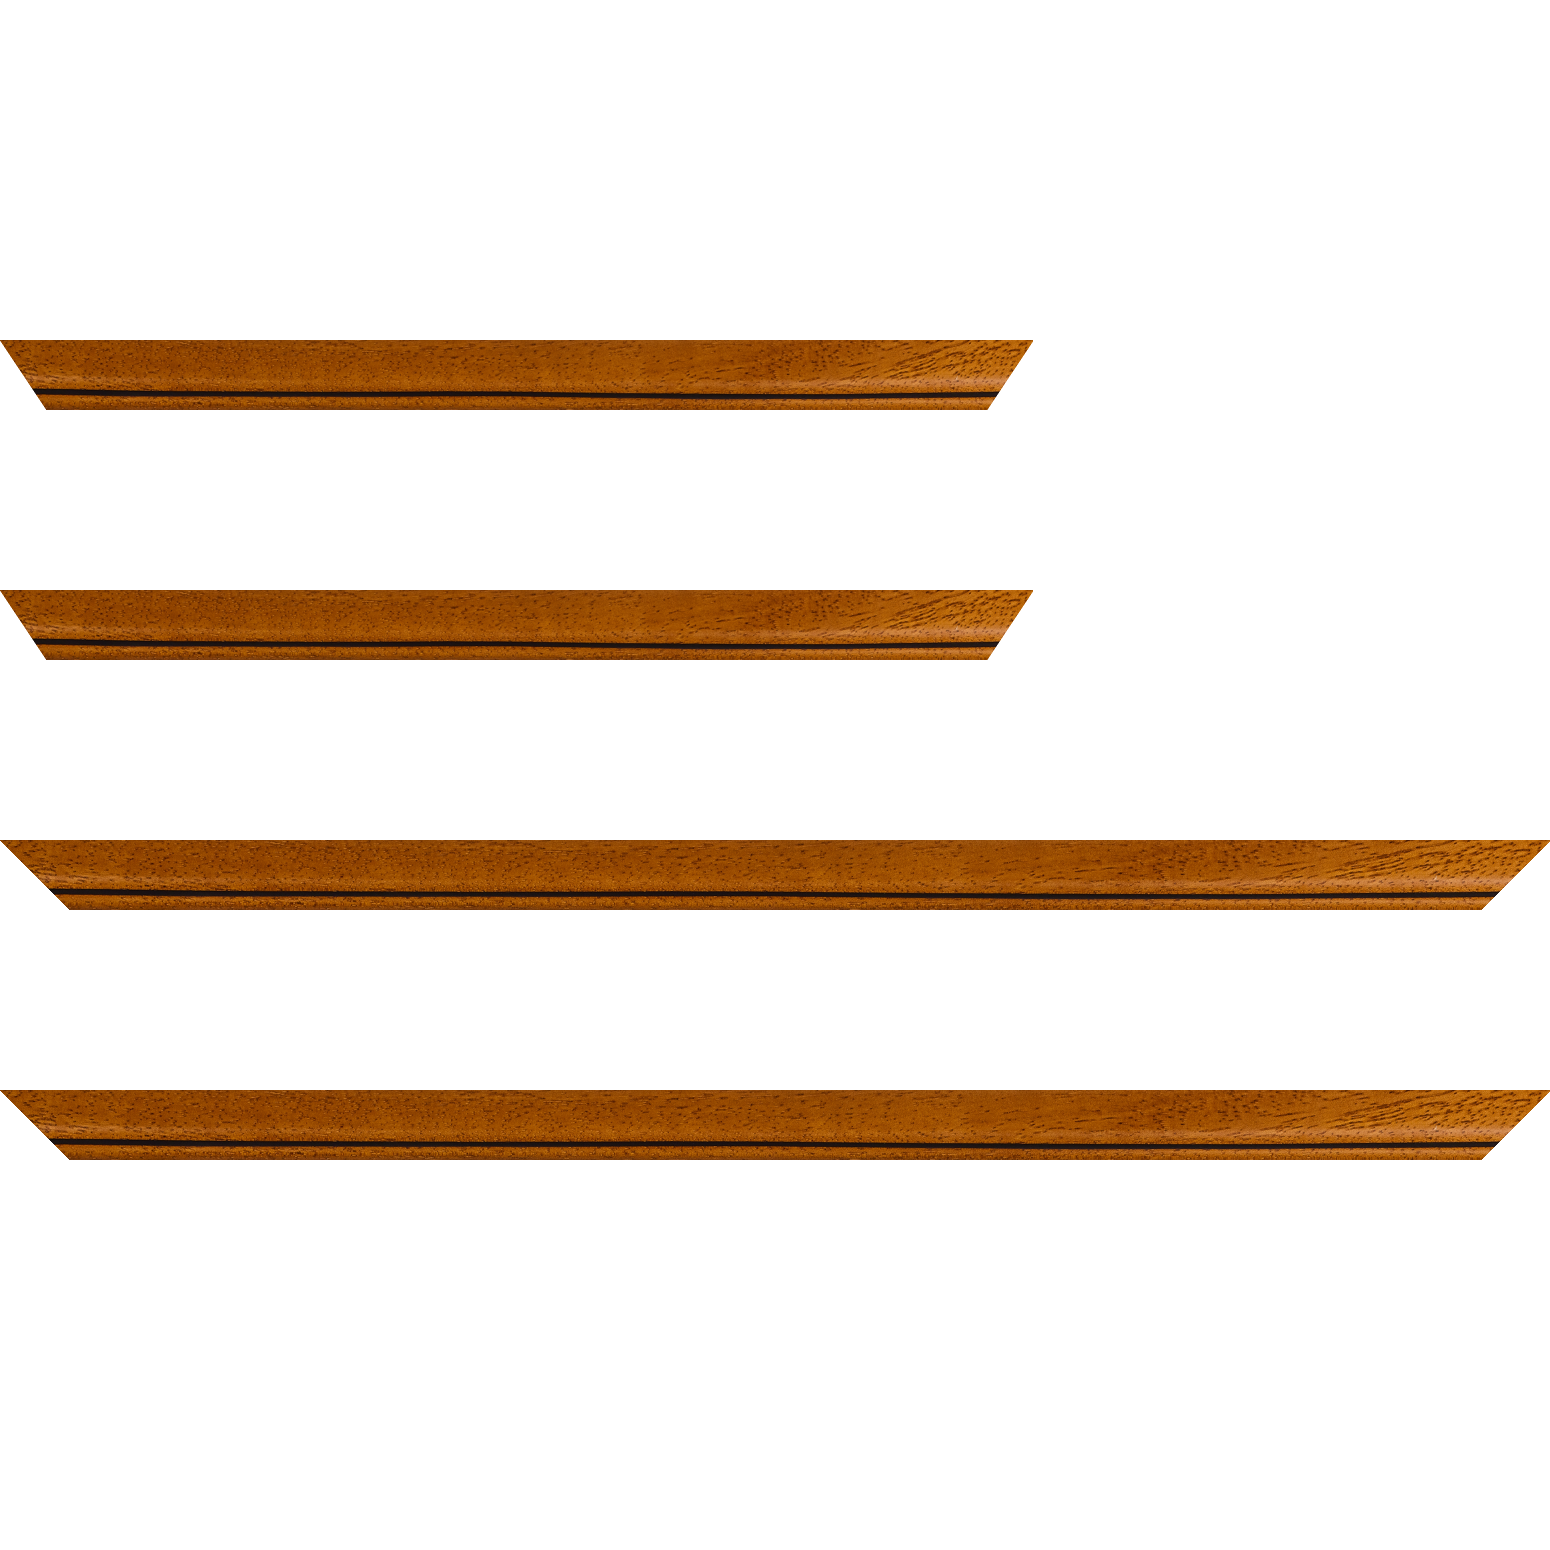 Baguette bois profil bombé largeur 2.4cm couleur marron ton bois satiné filet noir - 34x40